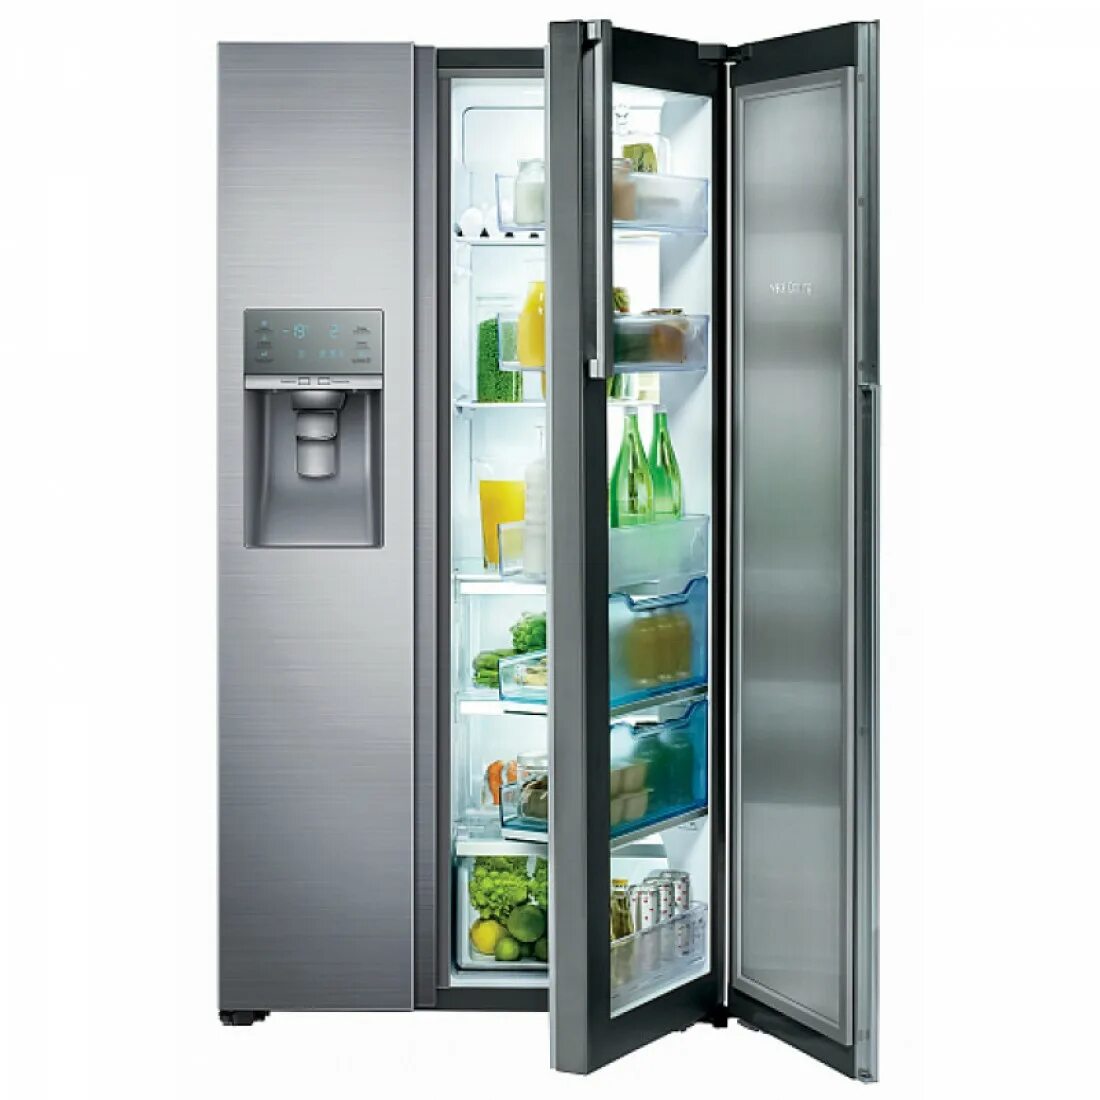 Холодильник Samsung rh-57 h90507f. Холодильник Samsung RF-61 k90407f. Холодильник Samsung RF-24 HSESBSR. Холодильник Samsung rh-57h90507f PNG.